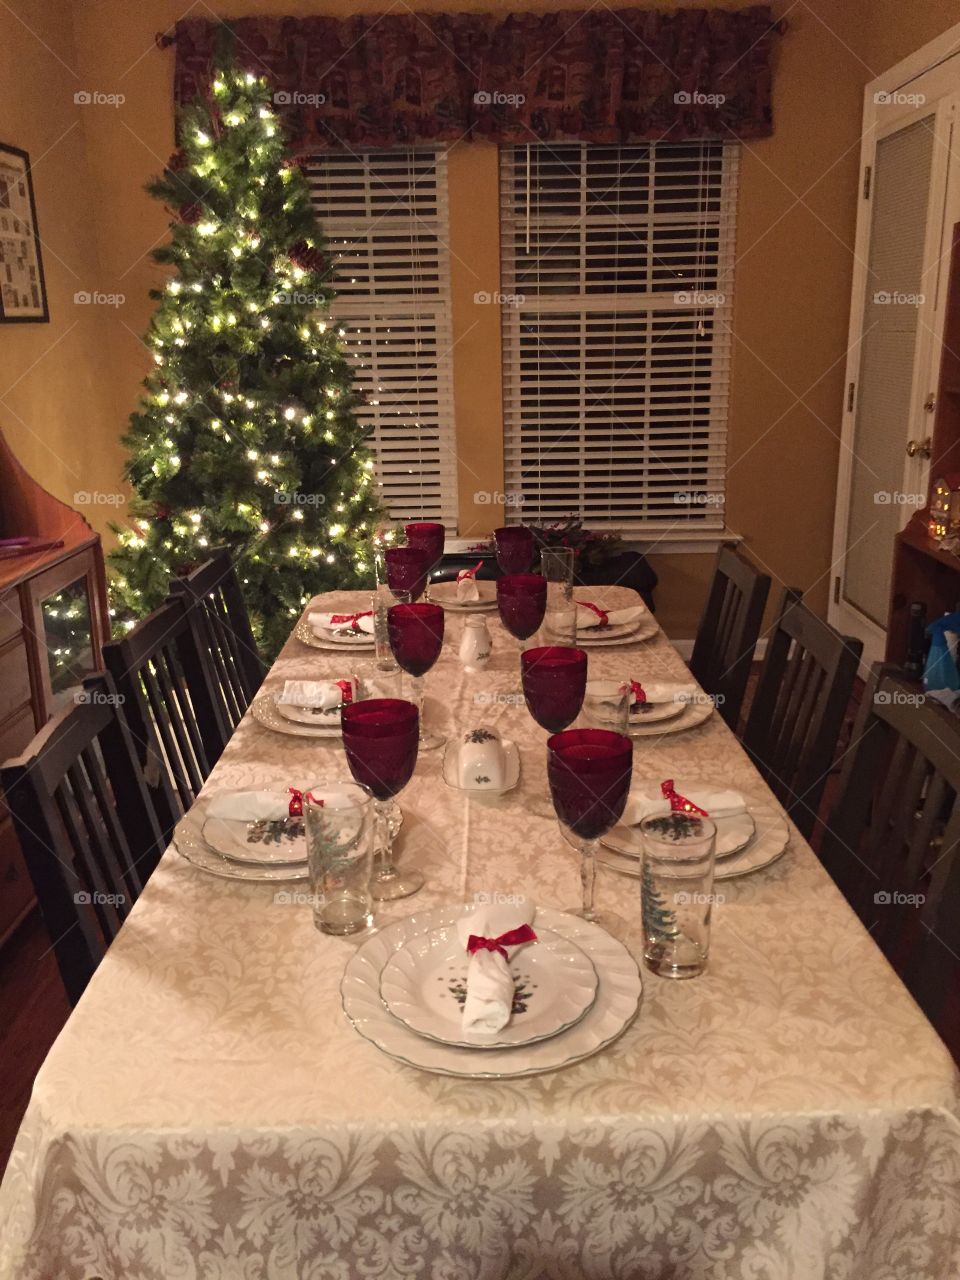 Table set for Christmas dinner